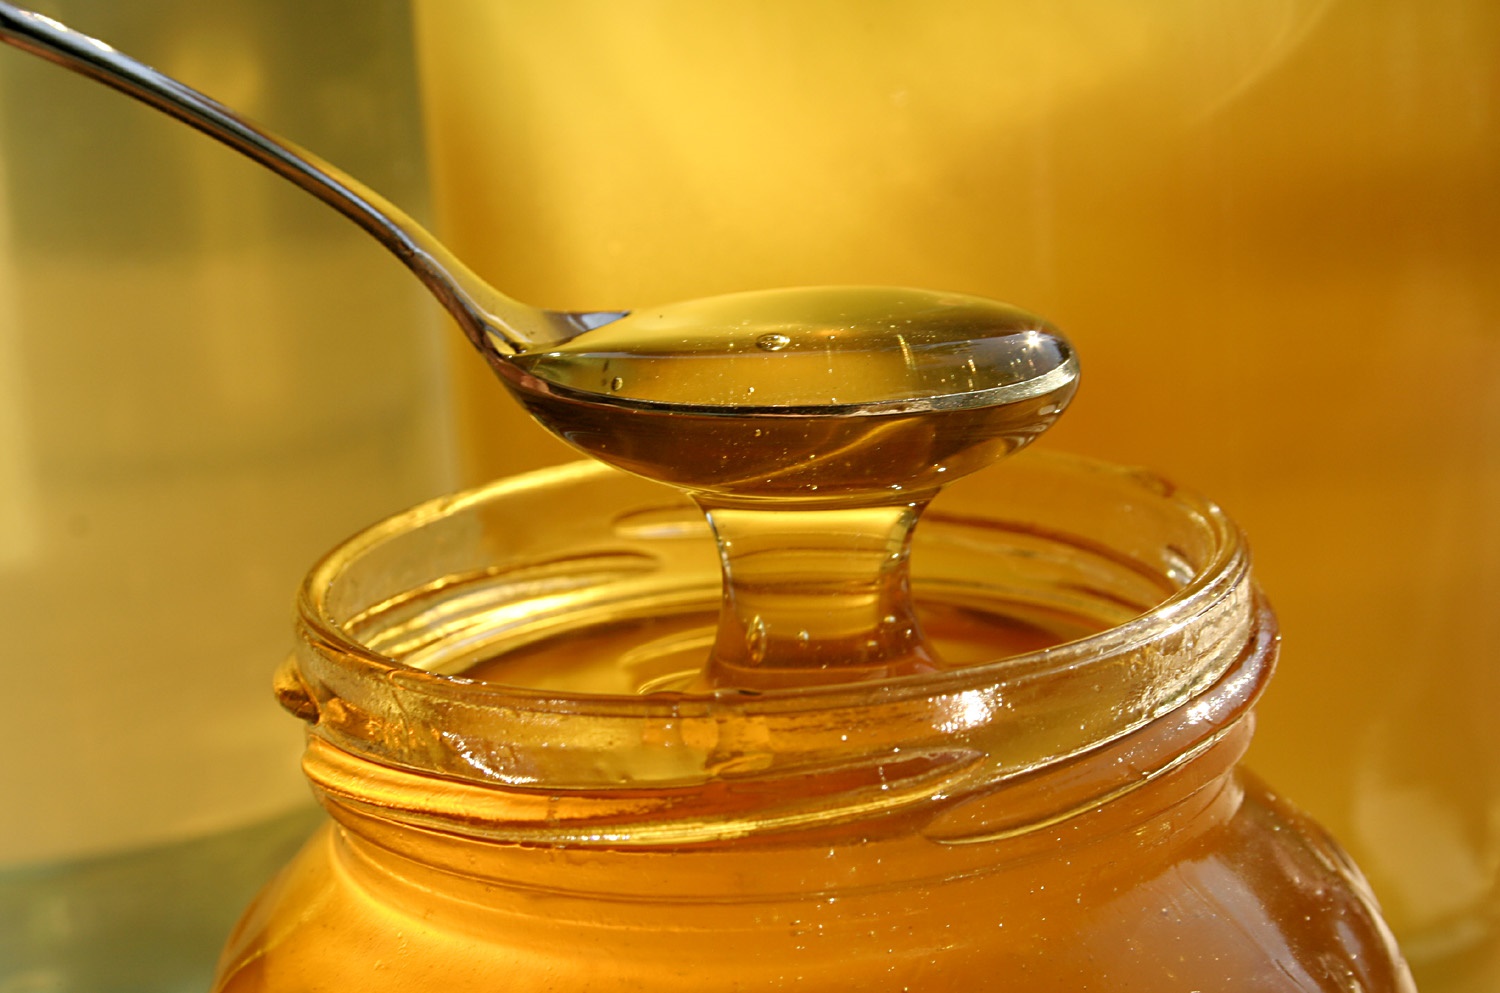 بیماران دیابتی می‌توانند عسل بخورند؟